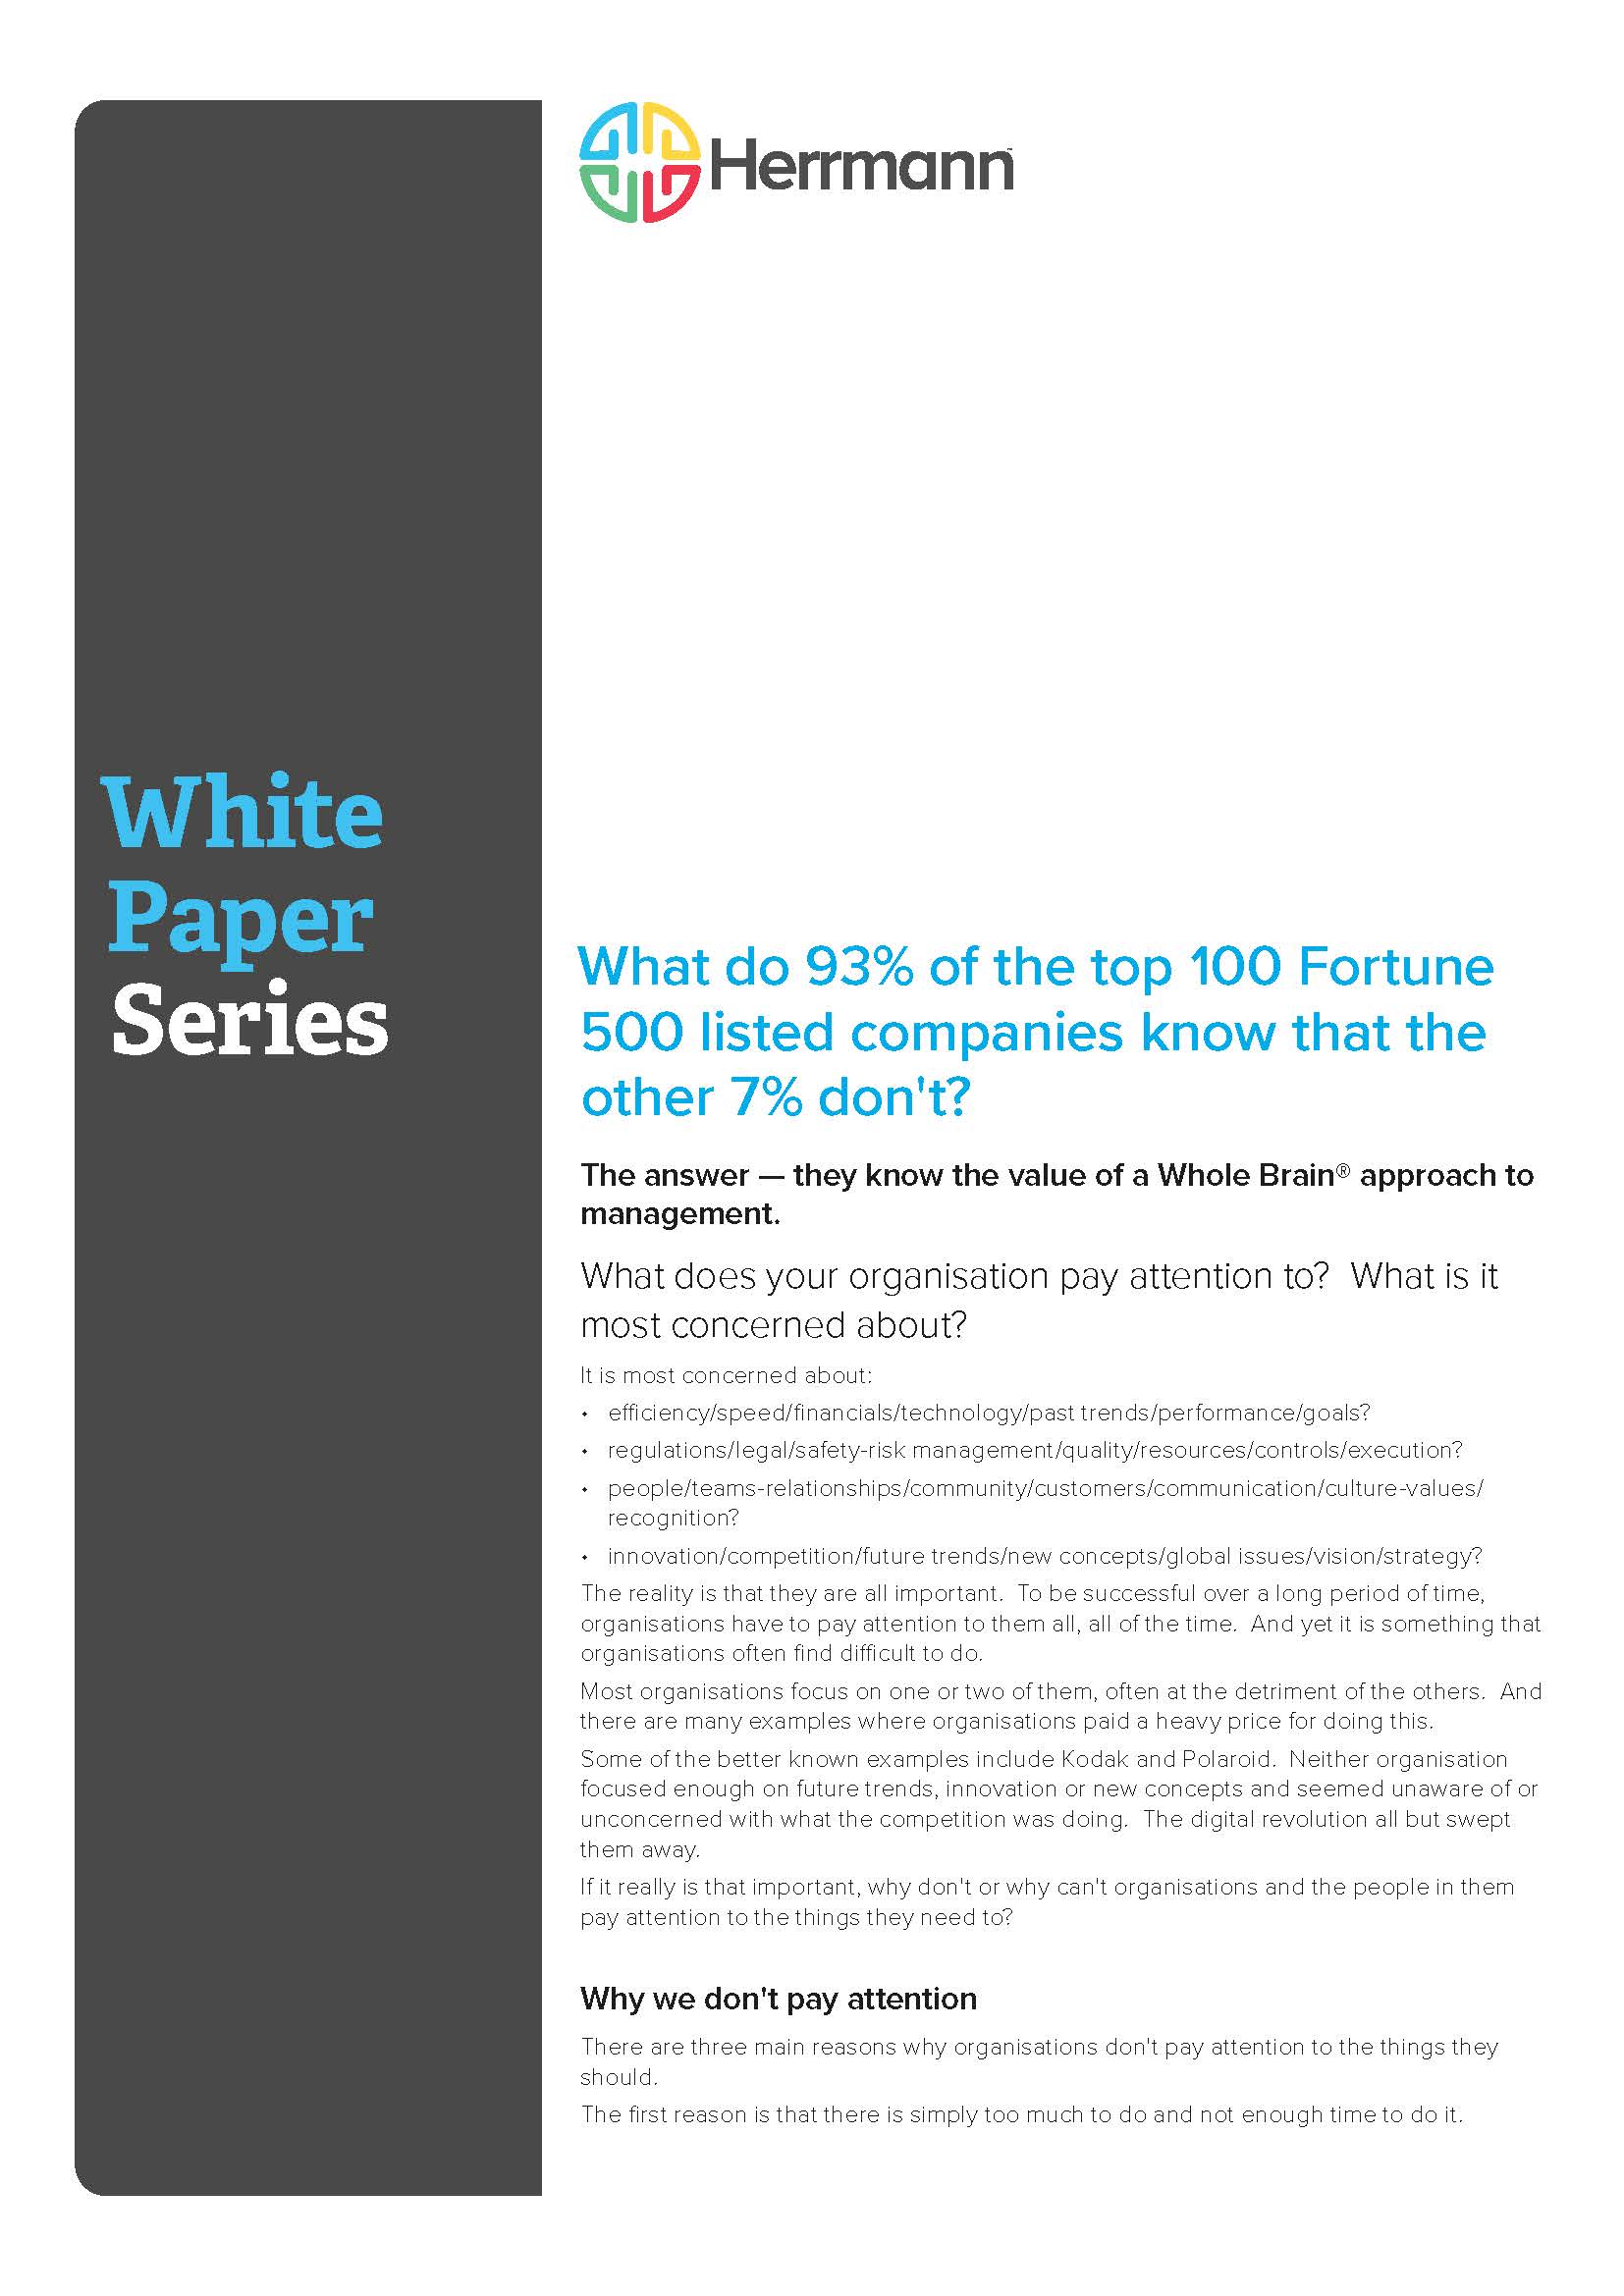 White Paper - Fortune 500